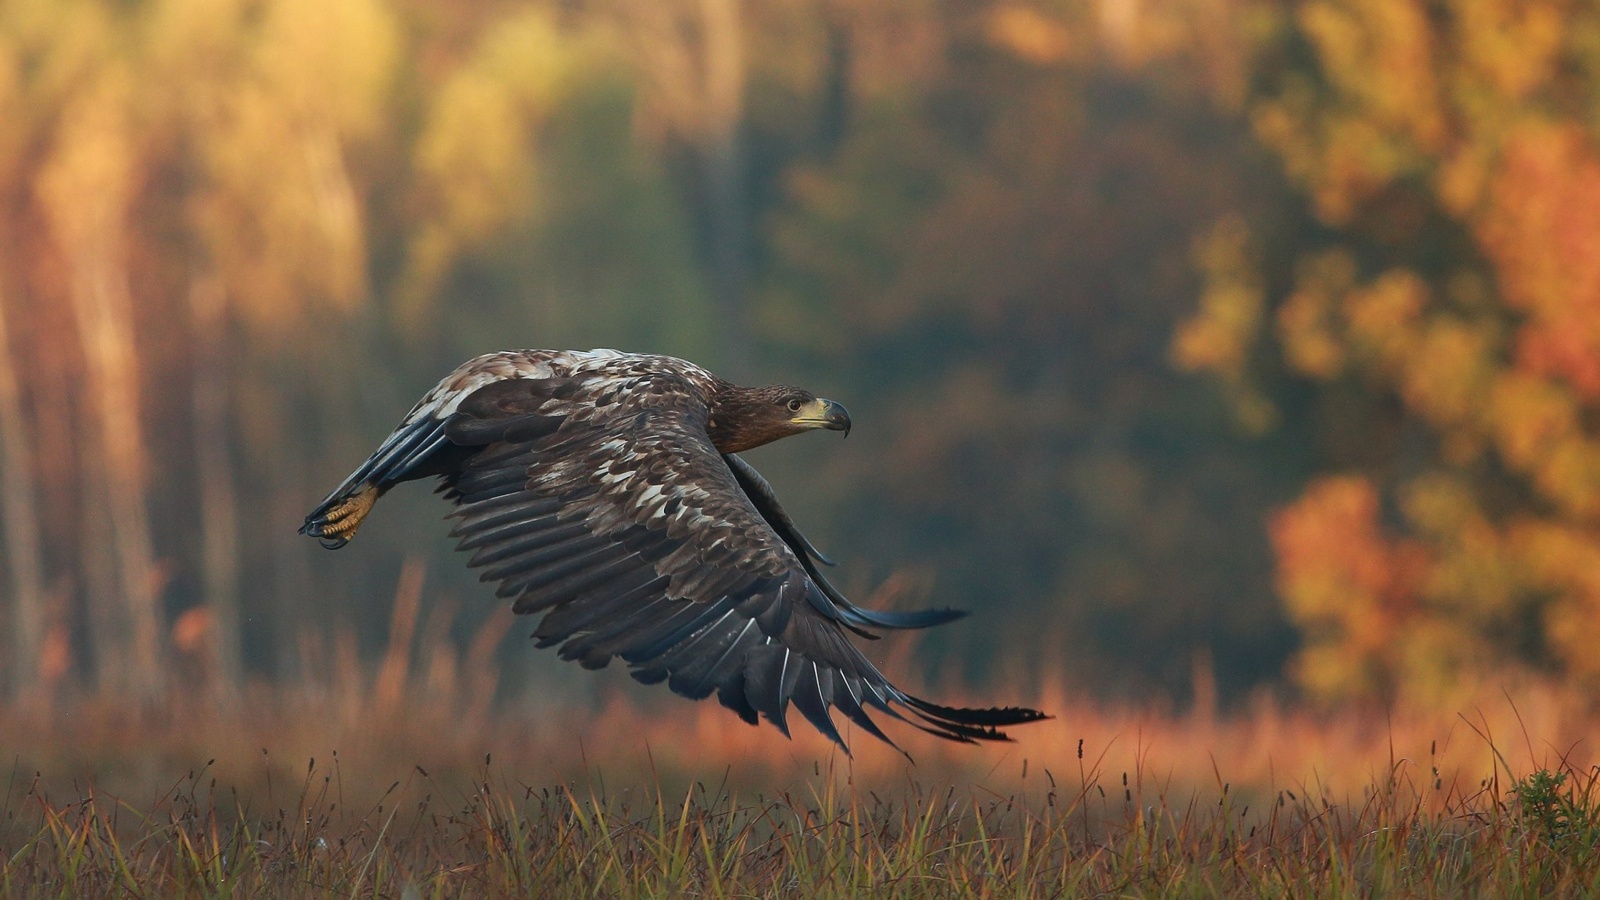 Fondo de pantalla Eagle wildlife photography 1600x900